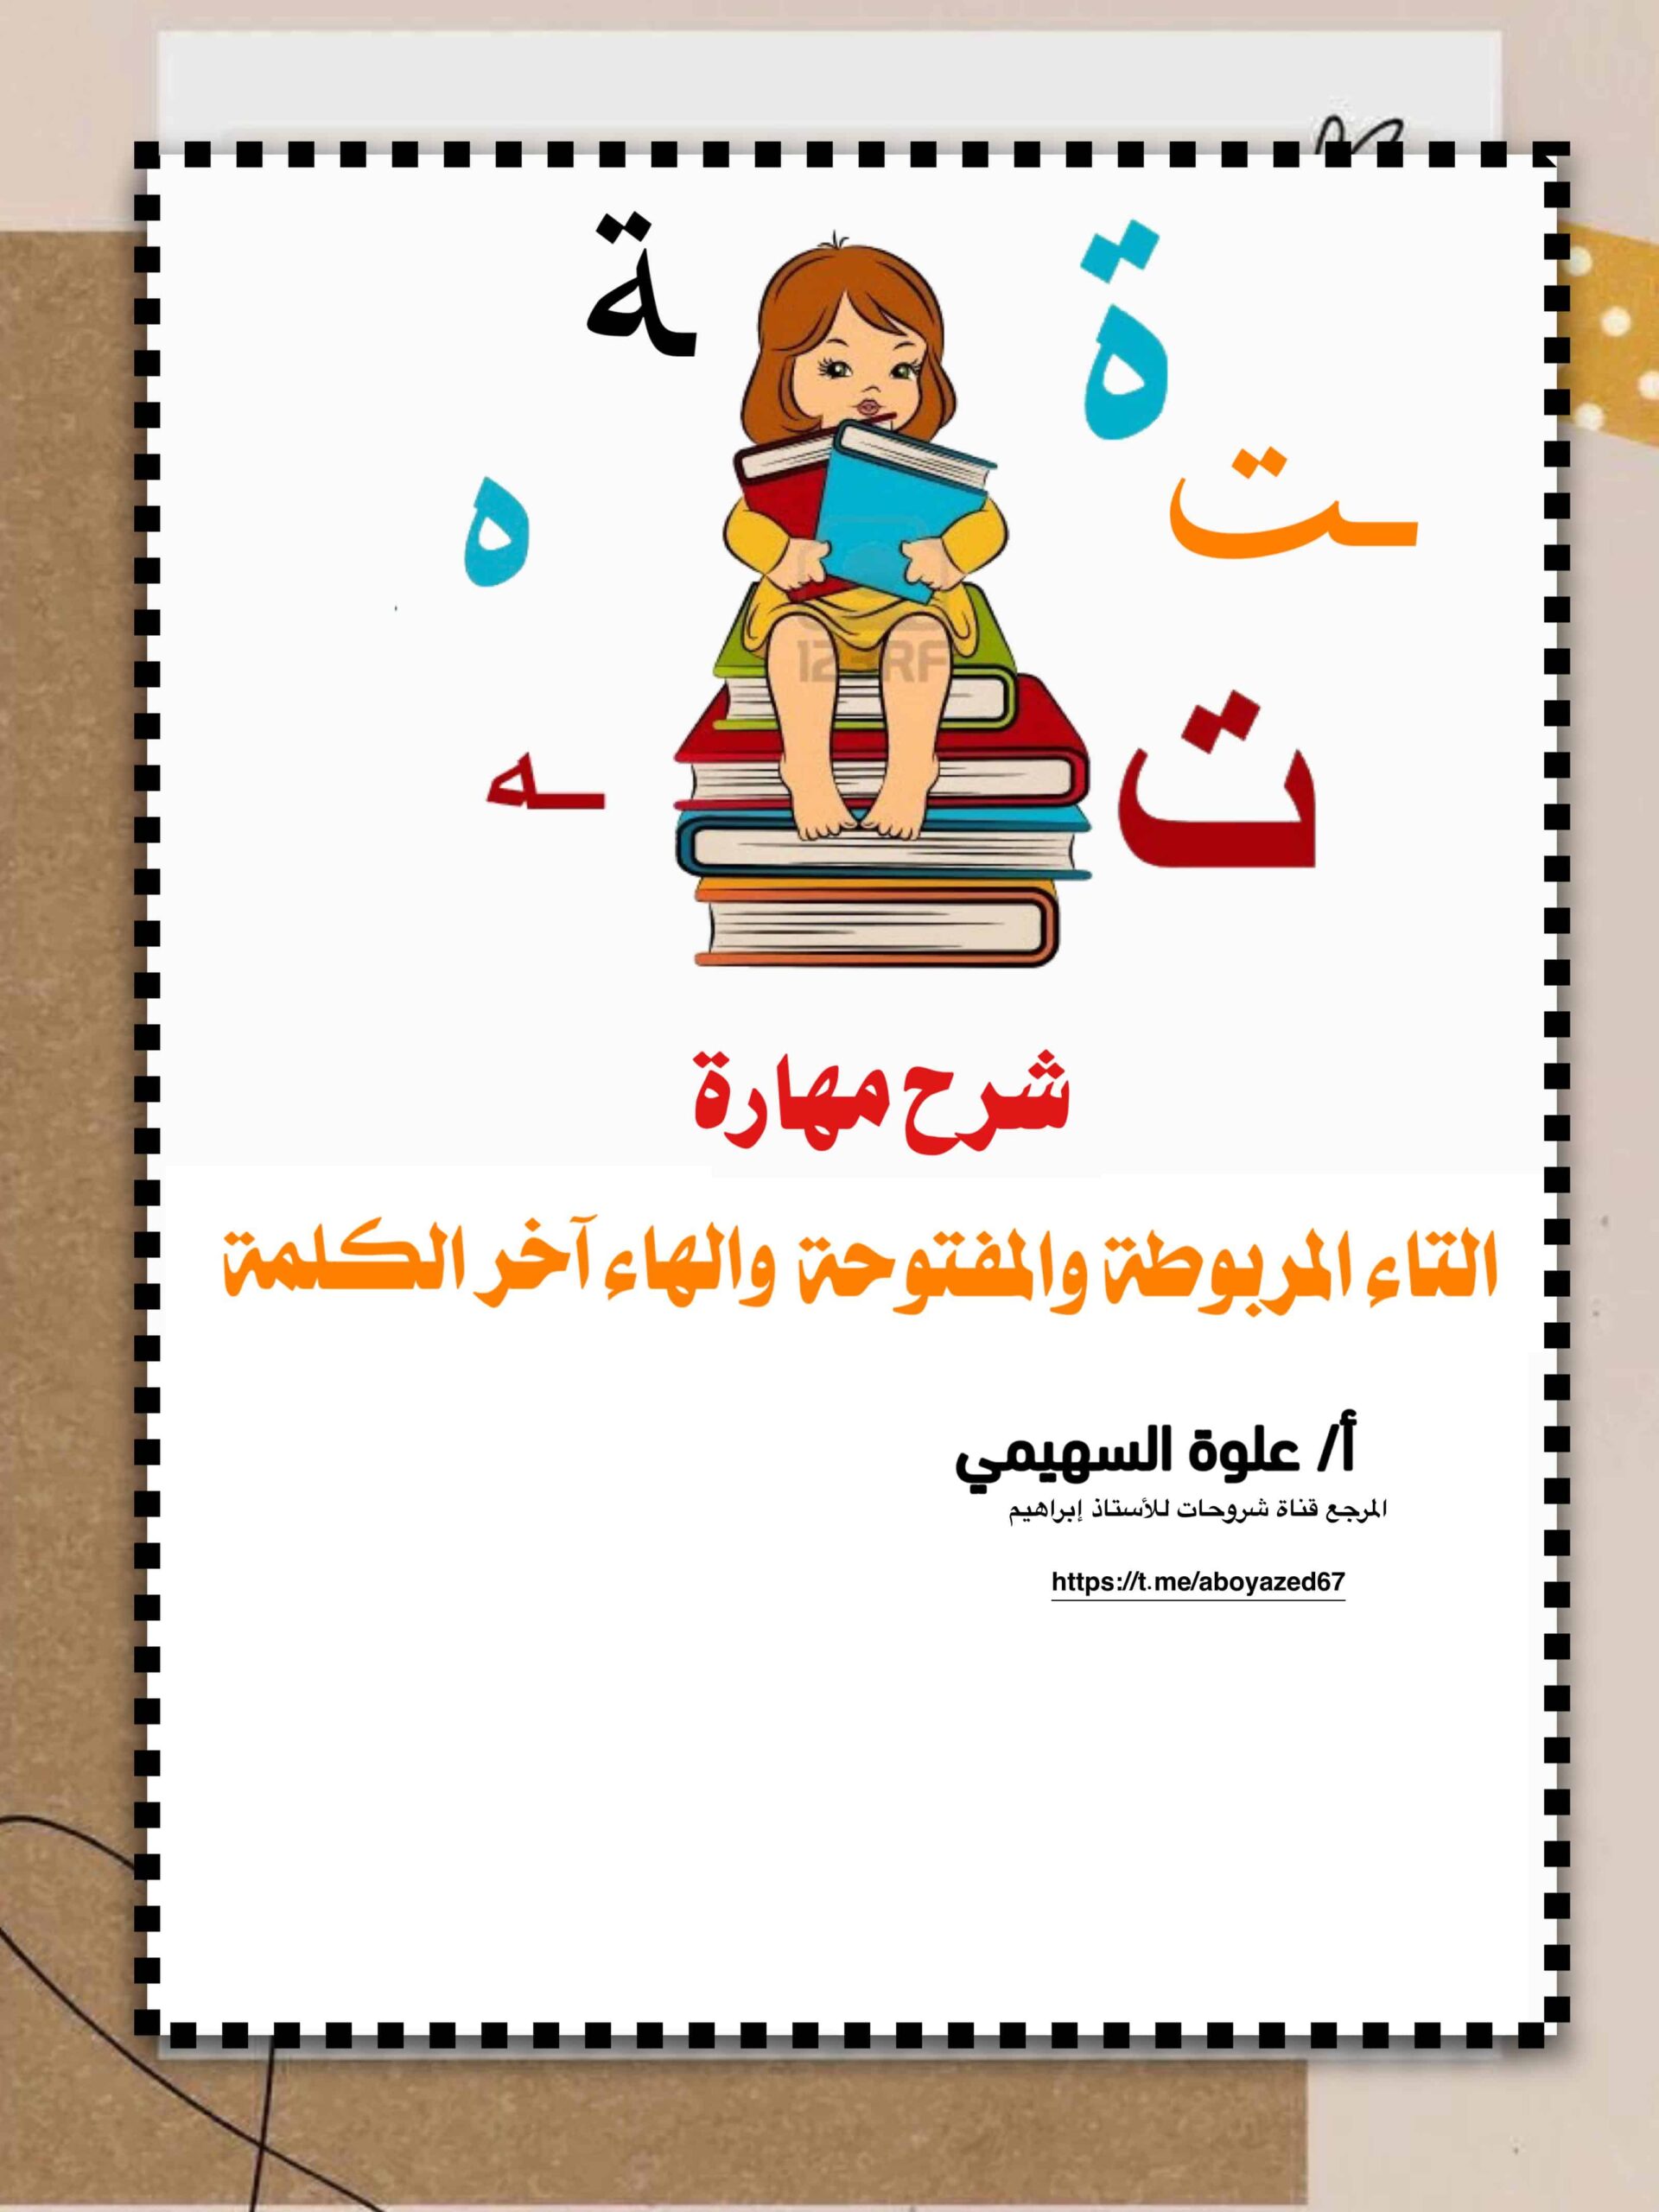 شرح مهارة التاء المفتوحة والتاء المربوطة والهاء آخر الكلمة اللغة العربية الصف الأول 